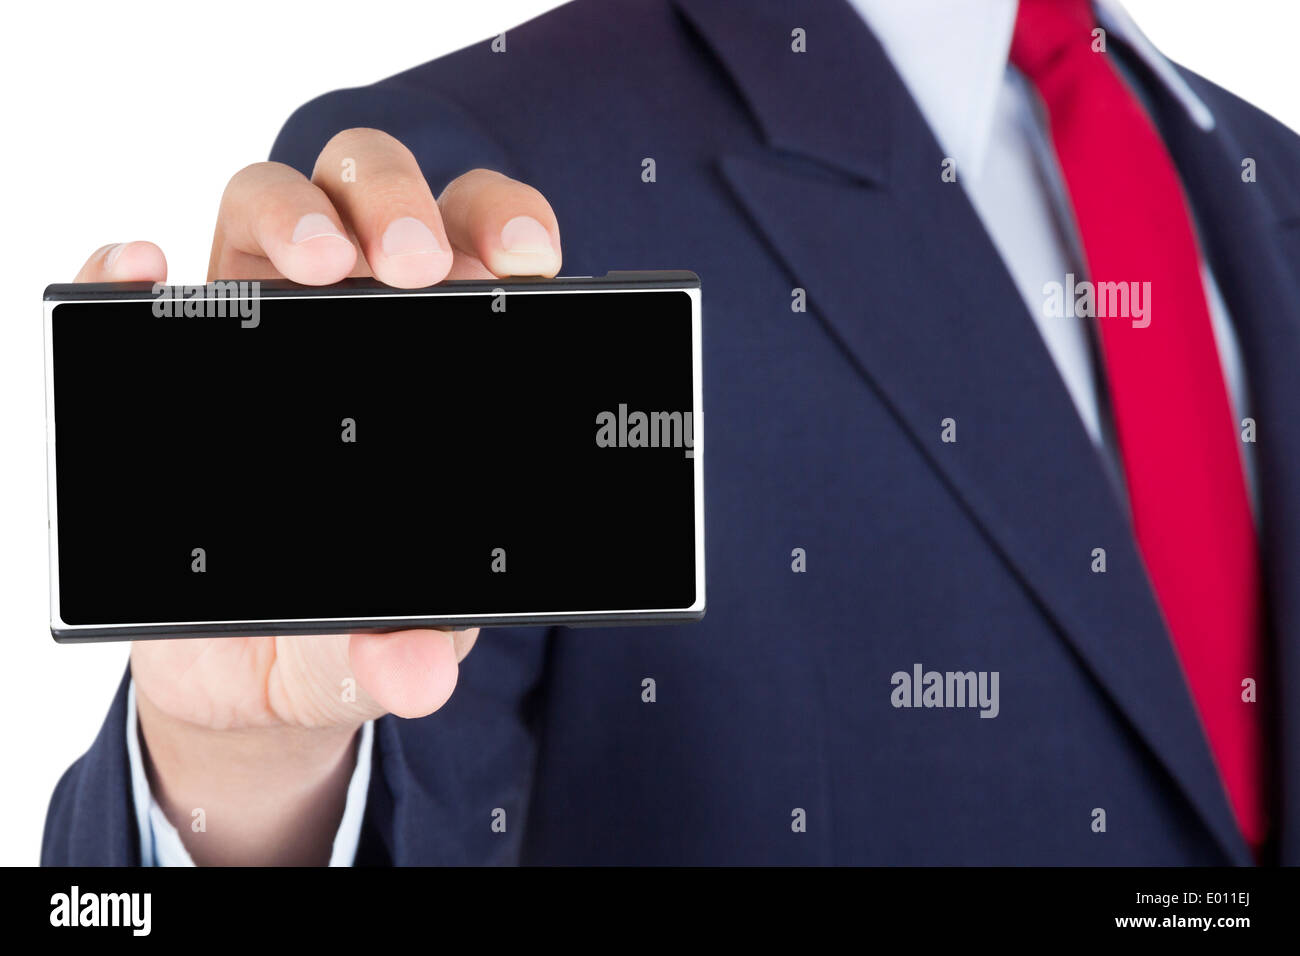 Mostra di smartphone sul proprietario mano con schermo vuoto isolato su sfondo bianco Foto Stock